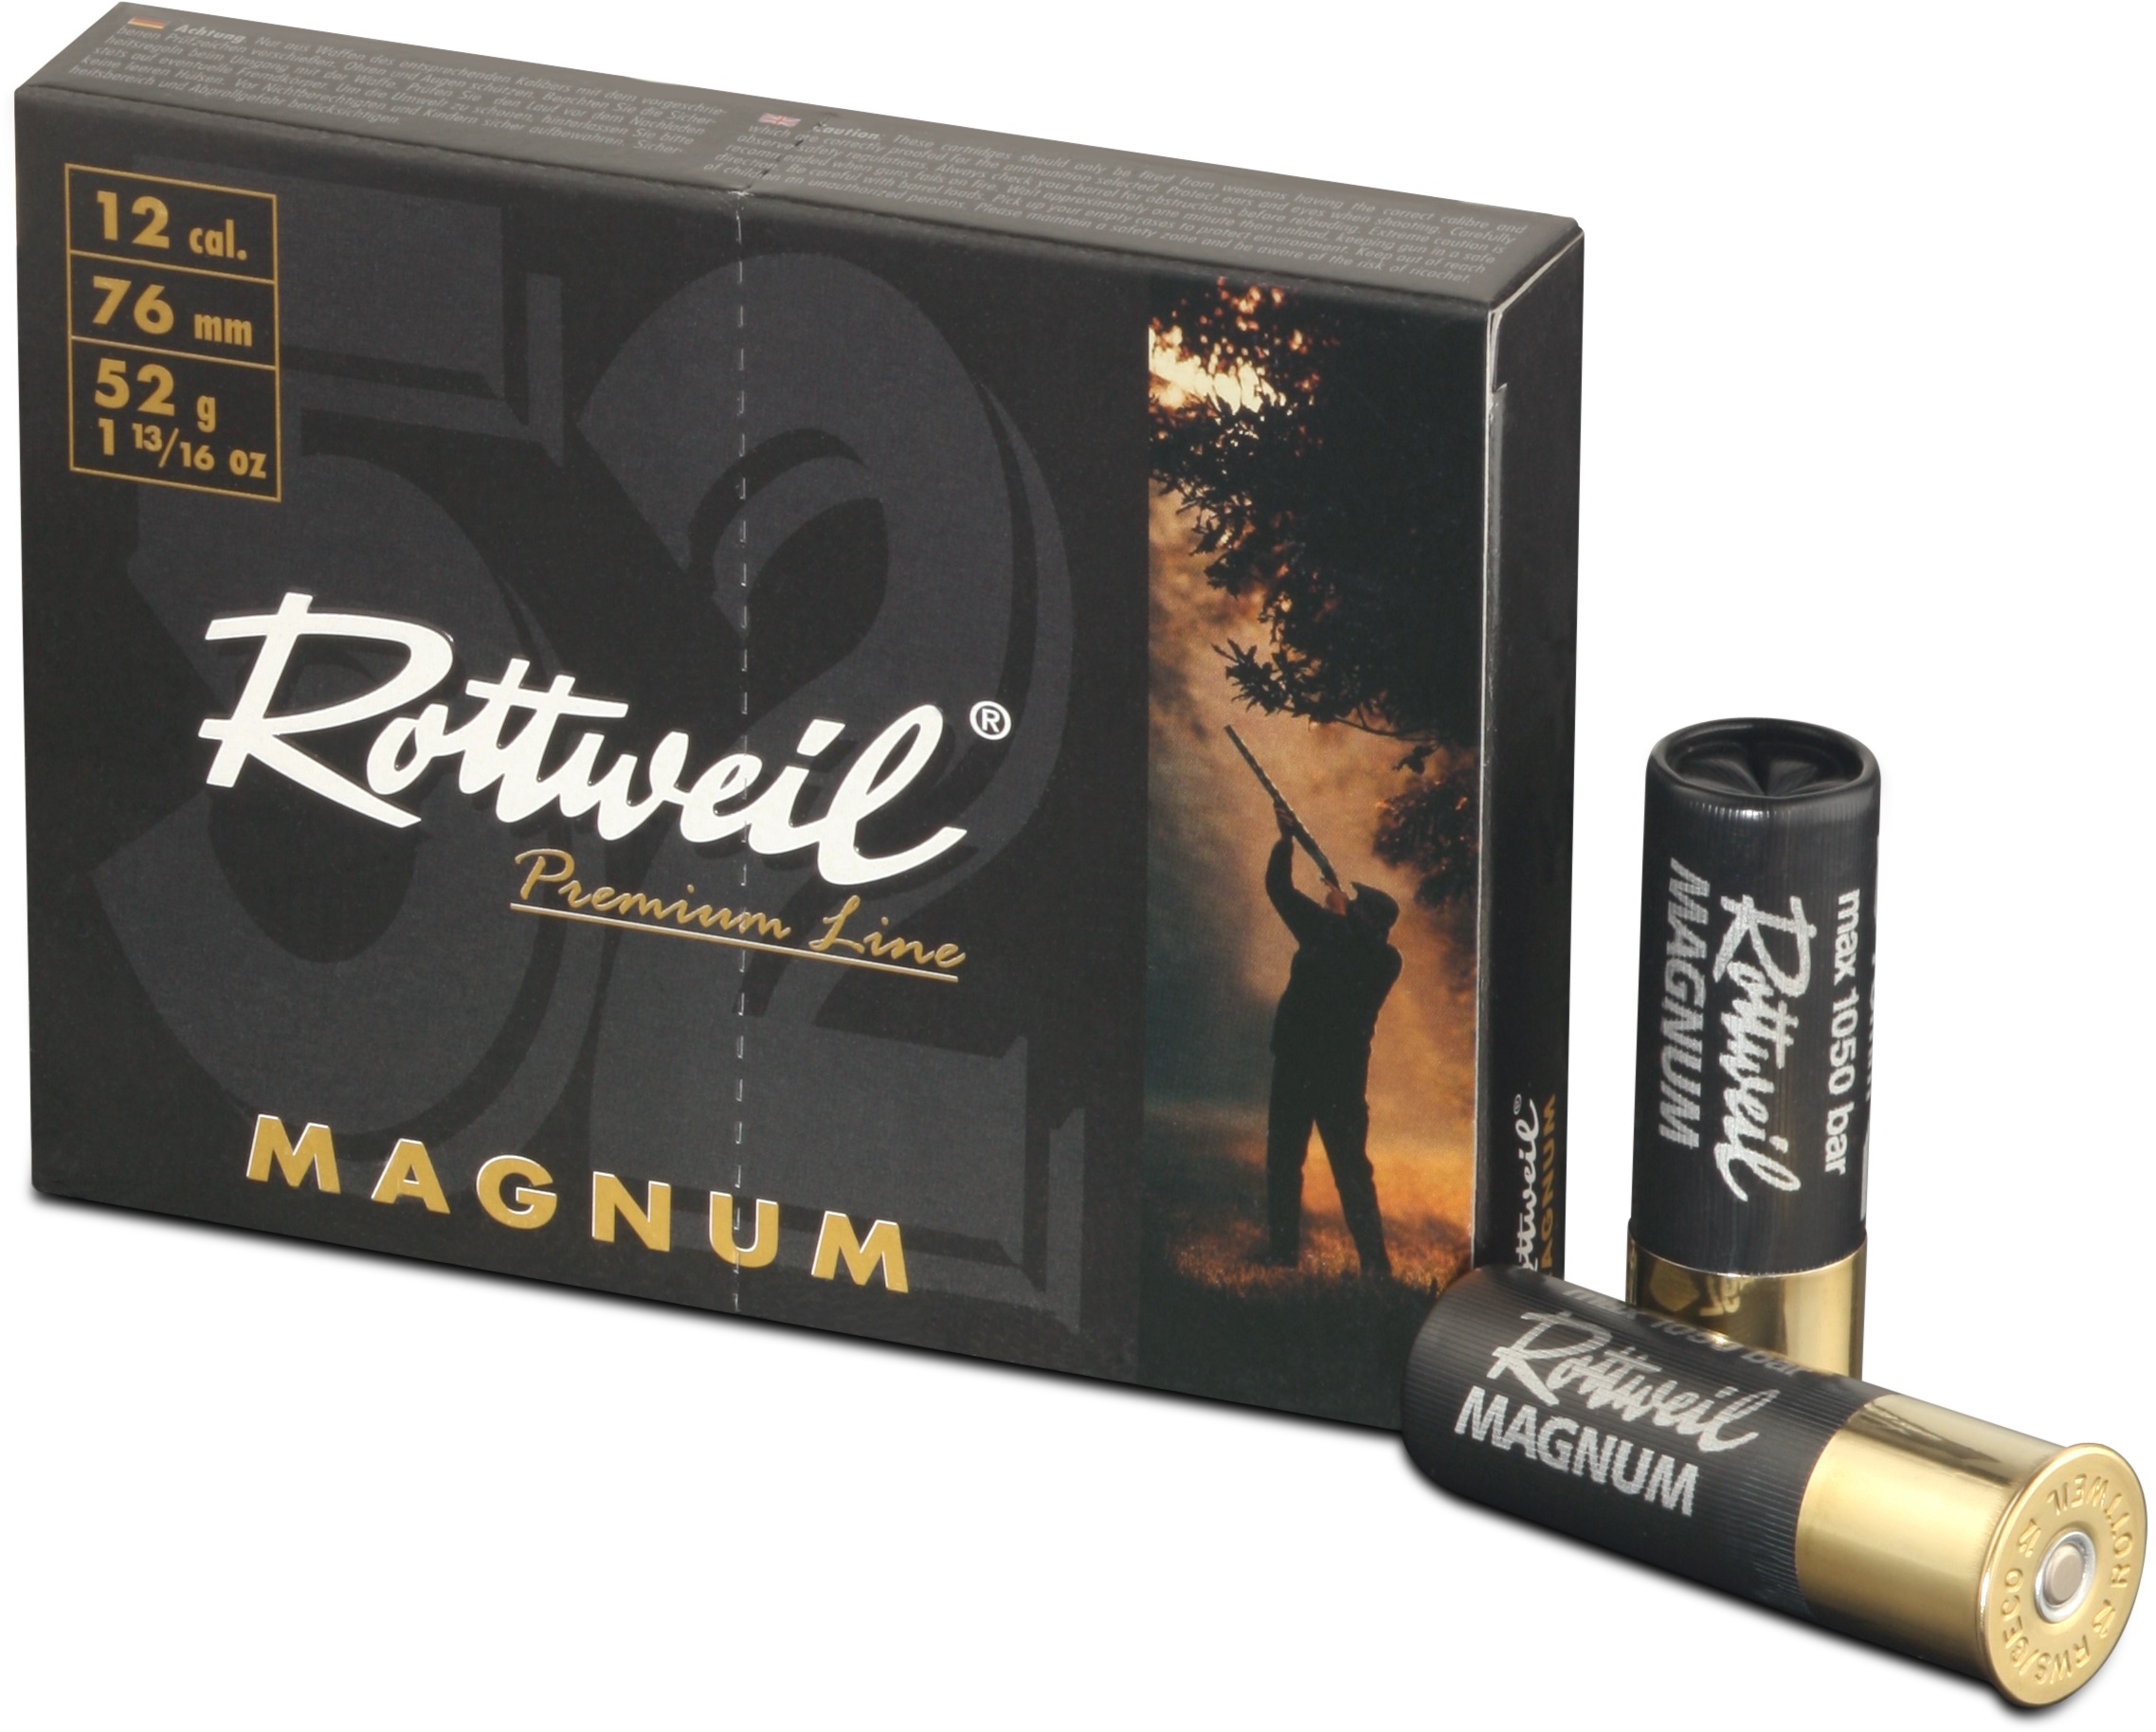 ROTTWEIL-Magnum 52 20/76 3,7mm Plastik, 10er Pack.